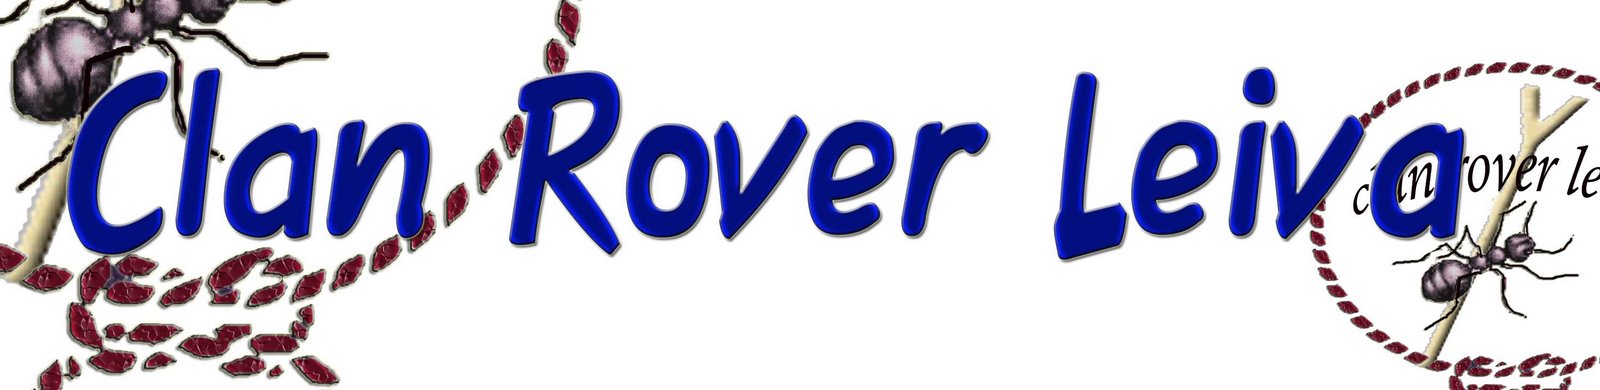 Clan Rover Leiva